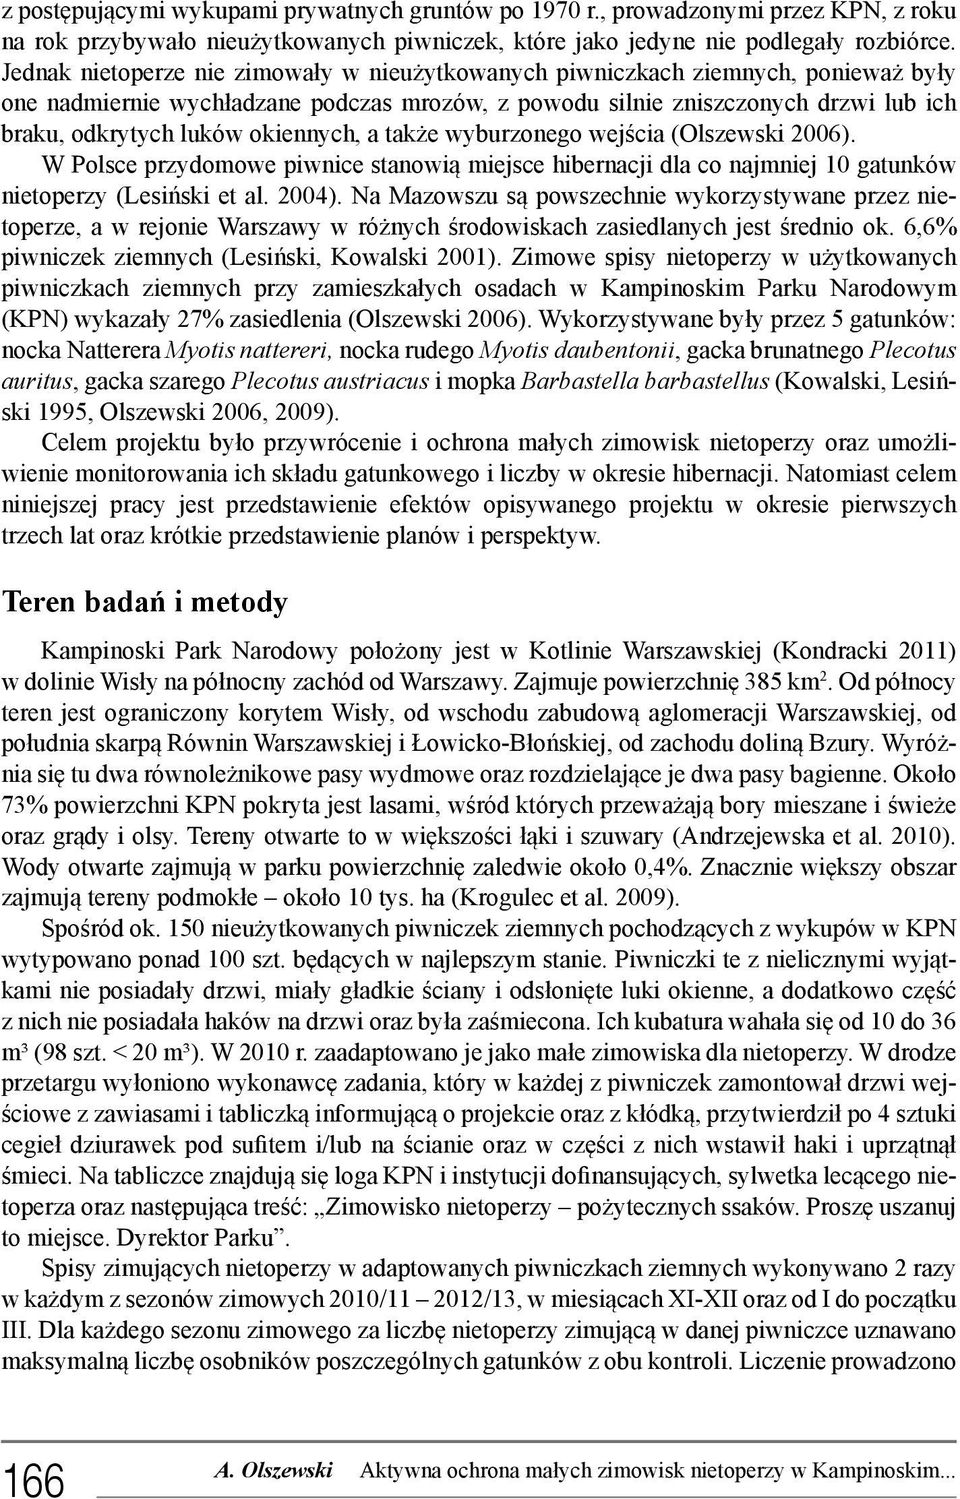 okiennych, a także wyburzonego wejścia (Olszewski 2006). W Polsce przydomowe piwnice stanowią miejsce hibernacji dla co najmniej 10 gatunków nietoperzy (Lesiński et al. 2004).